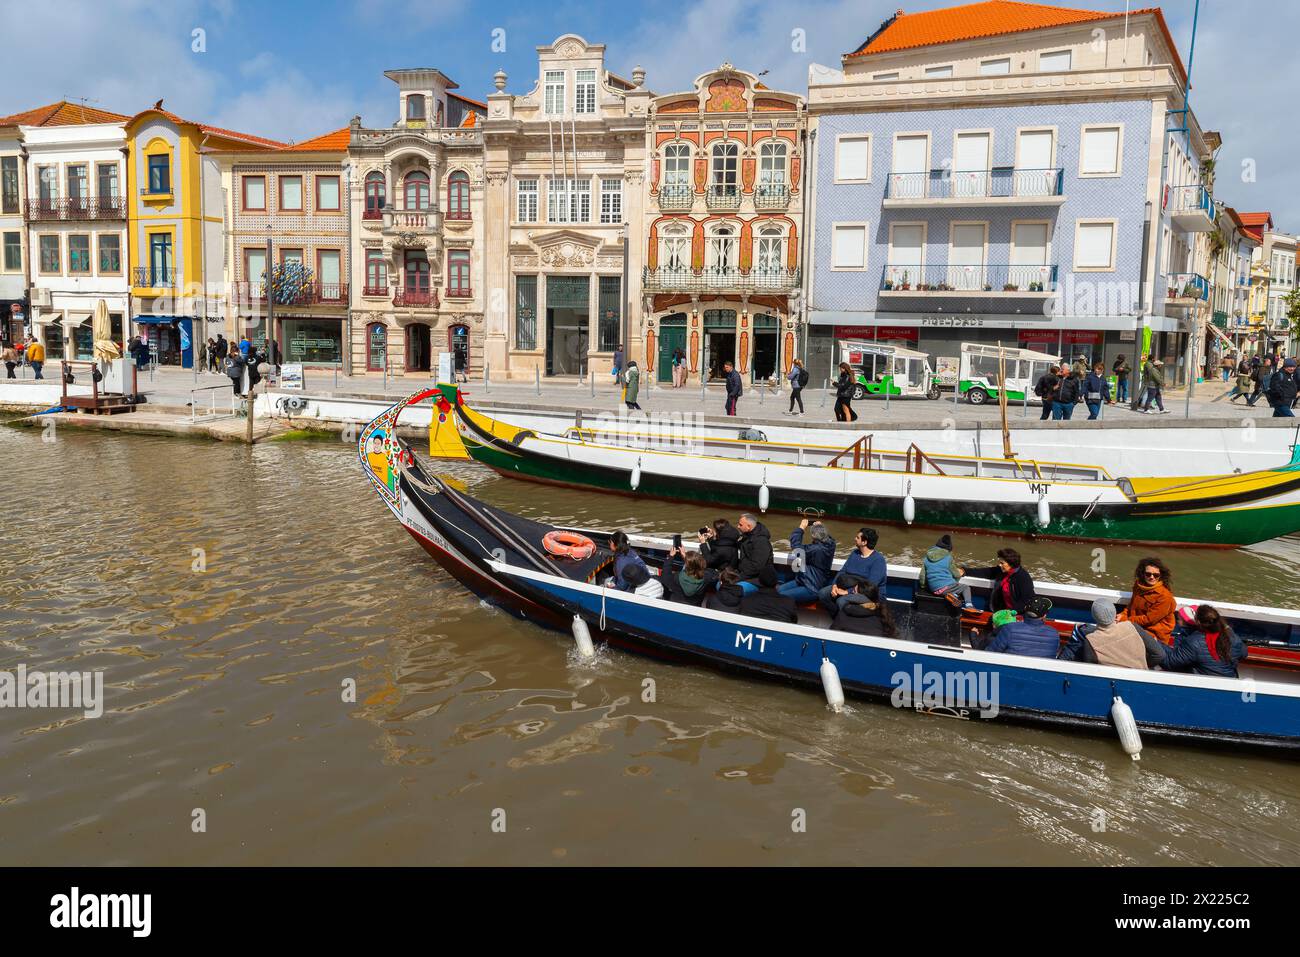 Maisons colorées près de canal Central. Pittoresque et belle petite ville Aveiro au Portugal. Une célèbre ville portugaise connue pour sa rivière et ses canaux. Aveiro Banque D'Images